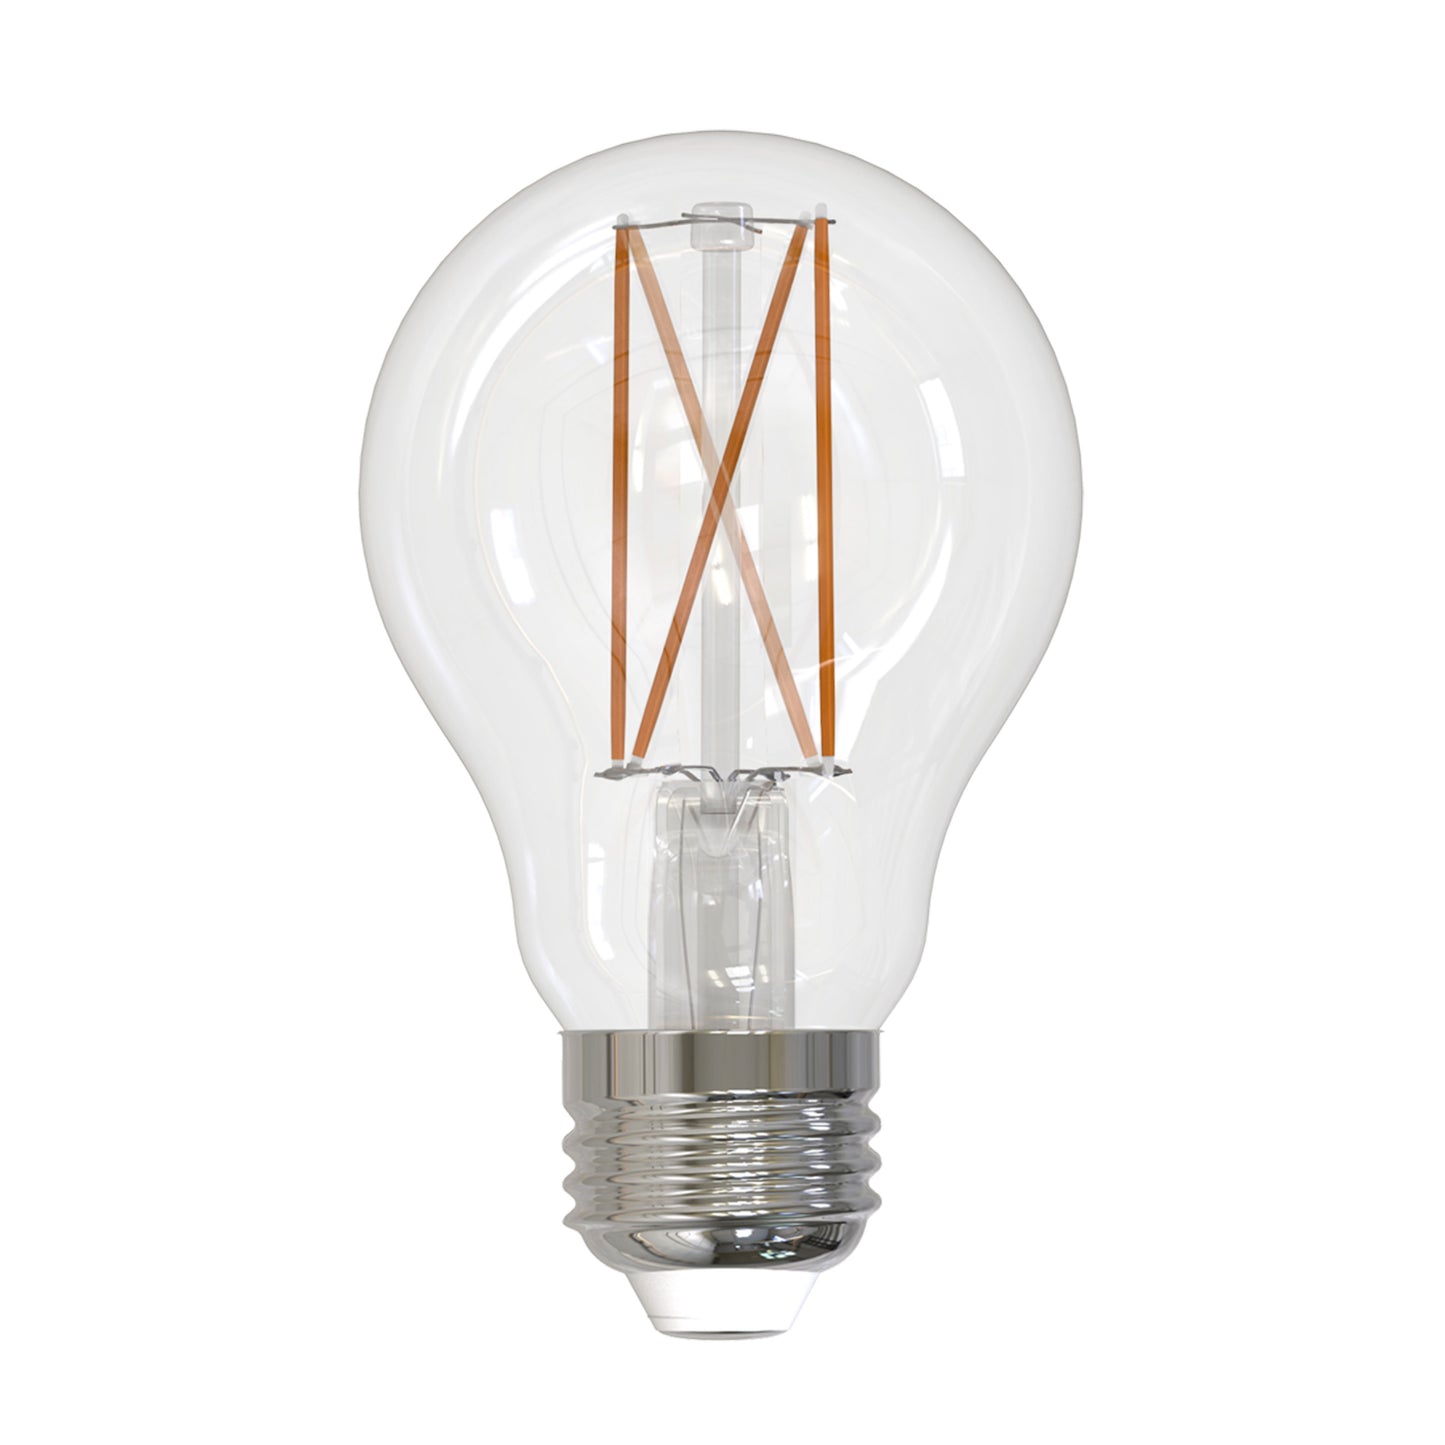 776768 - Filaments Supports A19 LED Light Bulb - 8.5 Watt - 3000K - 2 Pack